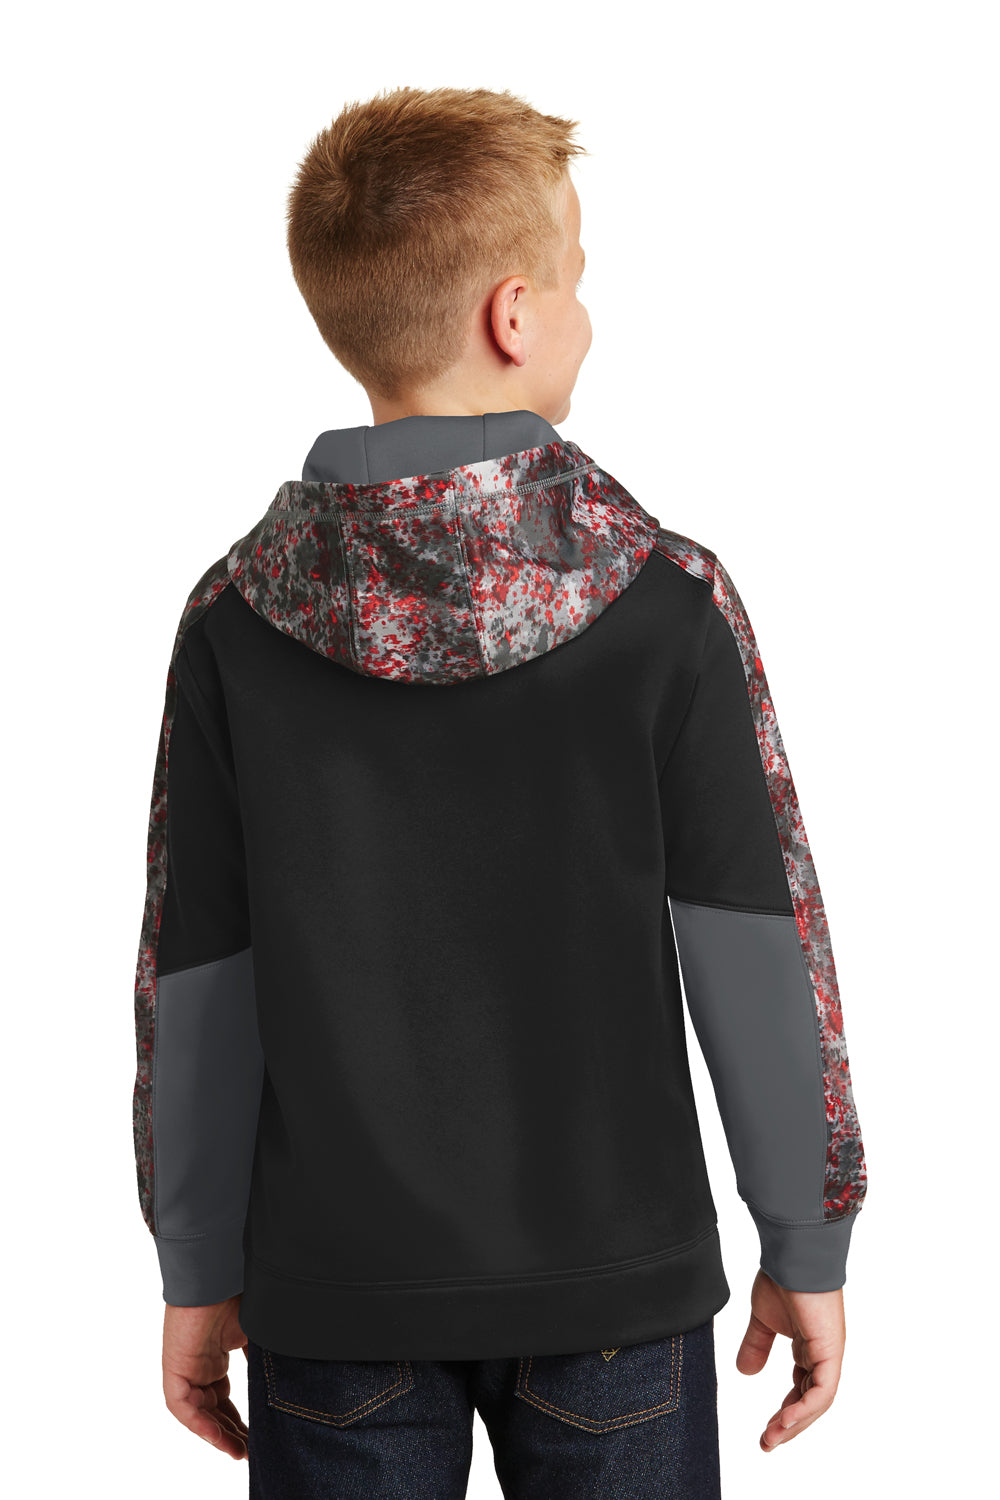 Sport-Tek YST231 Youth Sport-Wick Mineral Freeze Moisture Wicking Fleece Hooded Sweatshirt Hoodie Black/Red Back